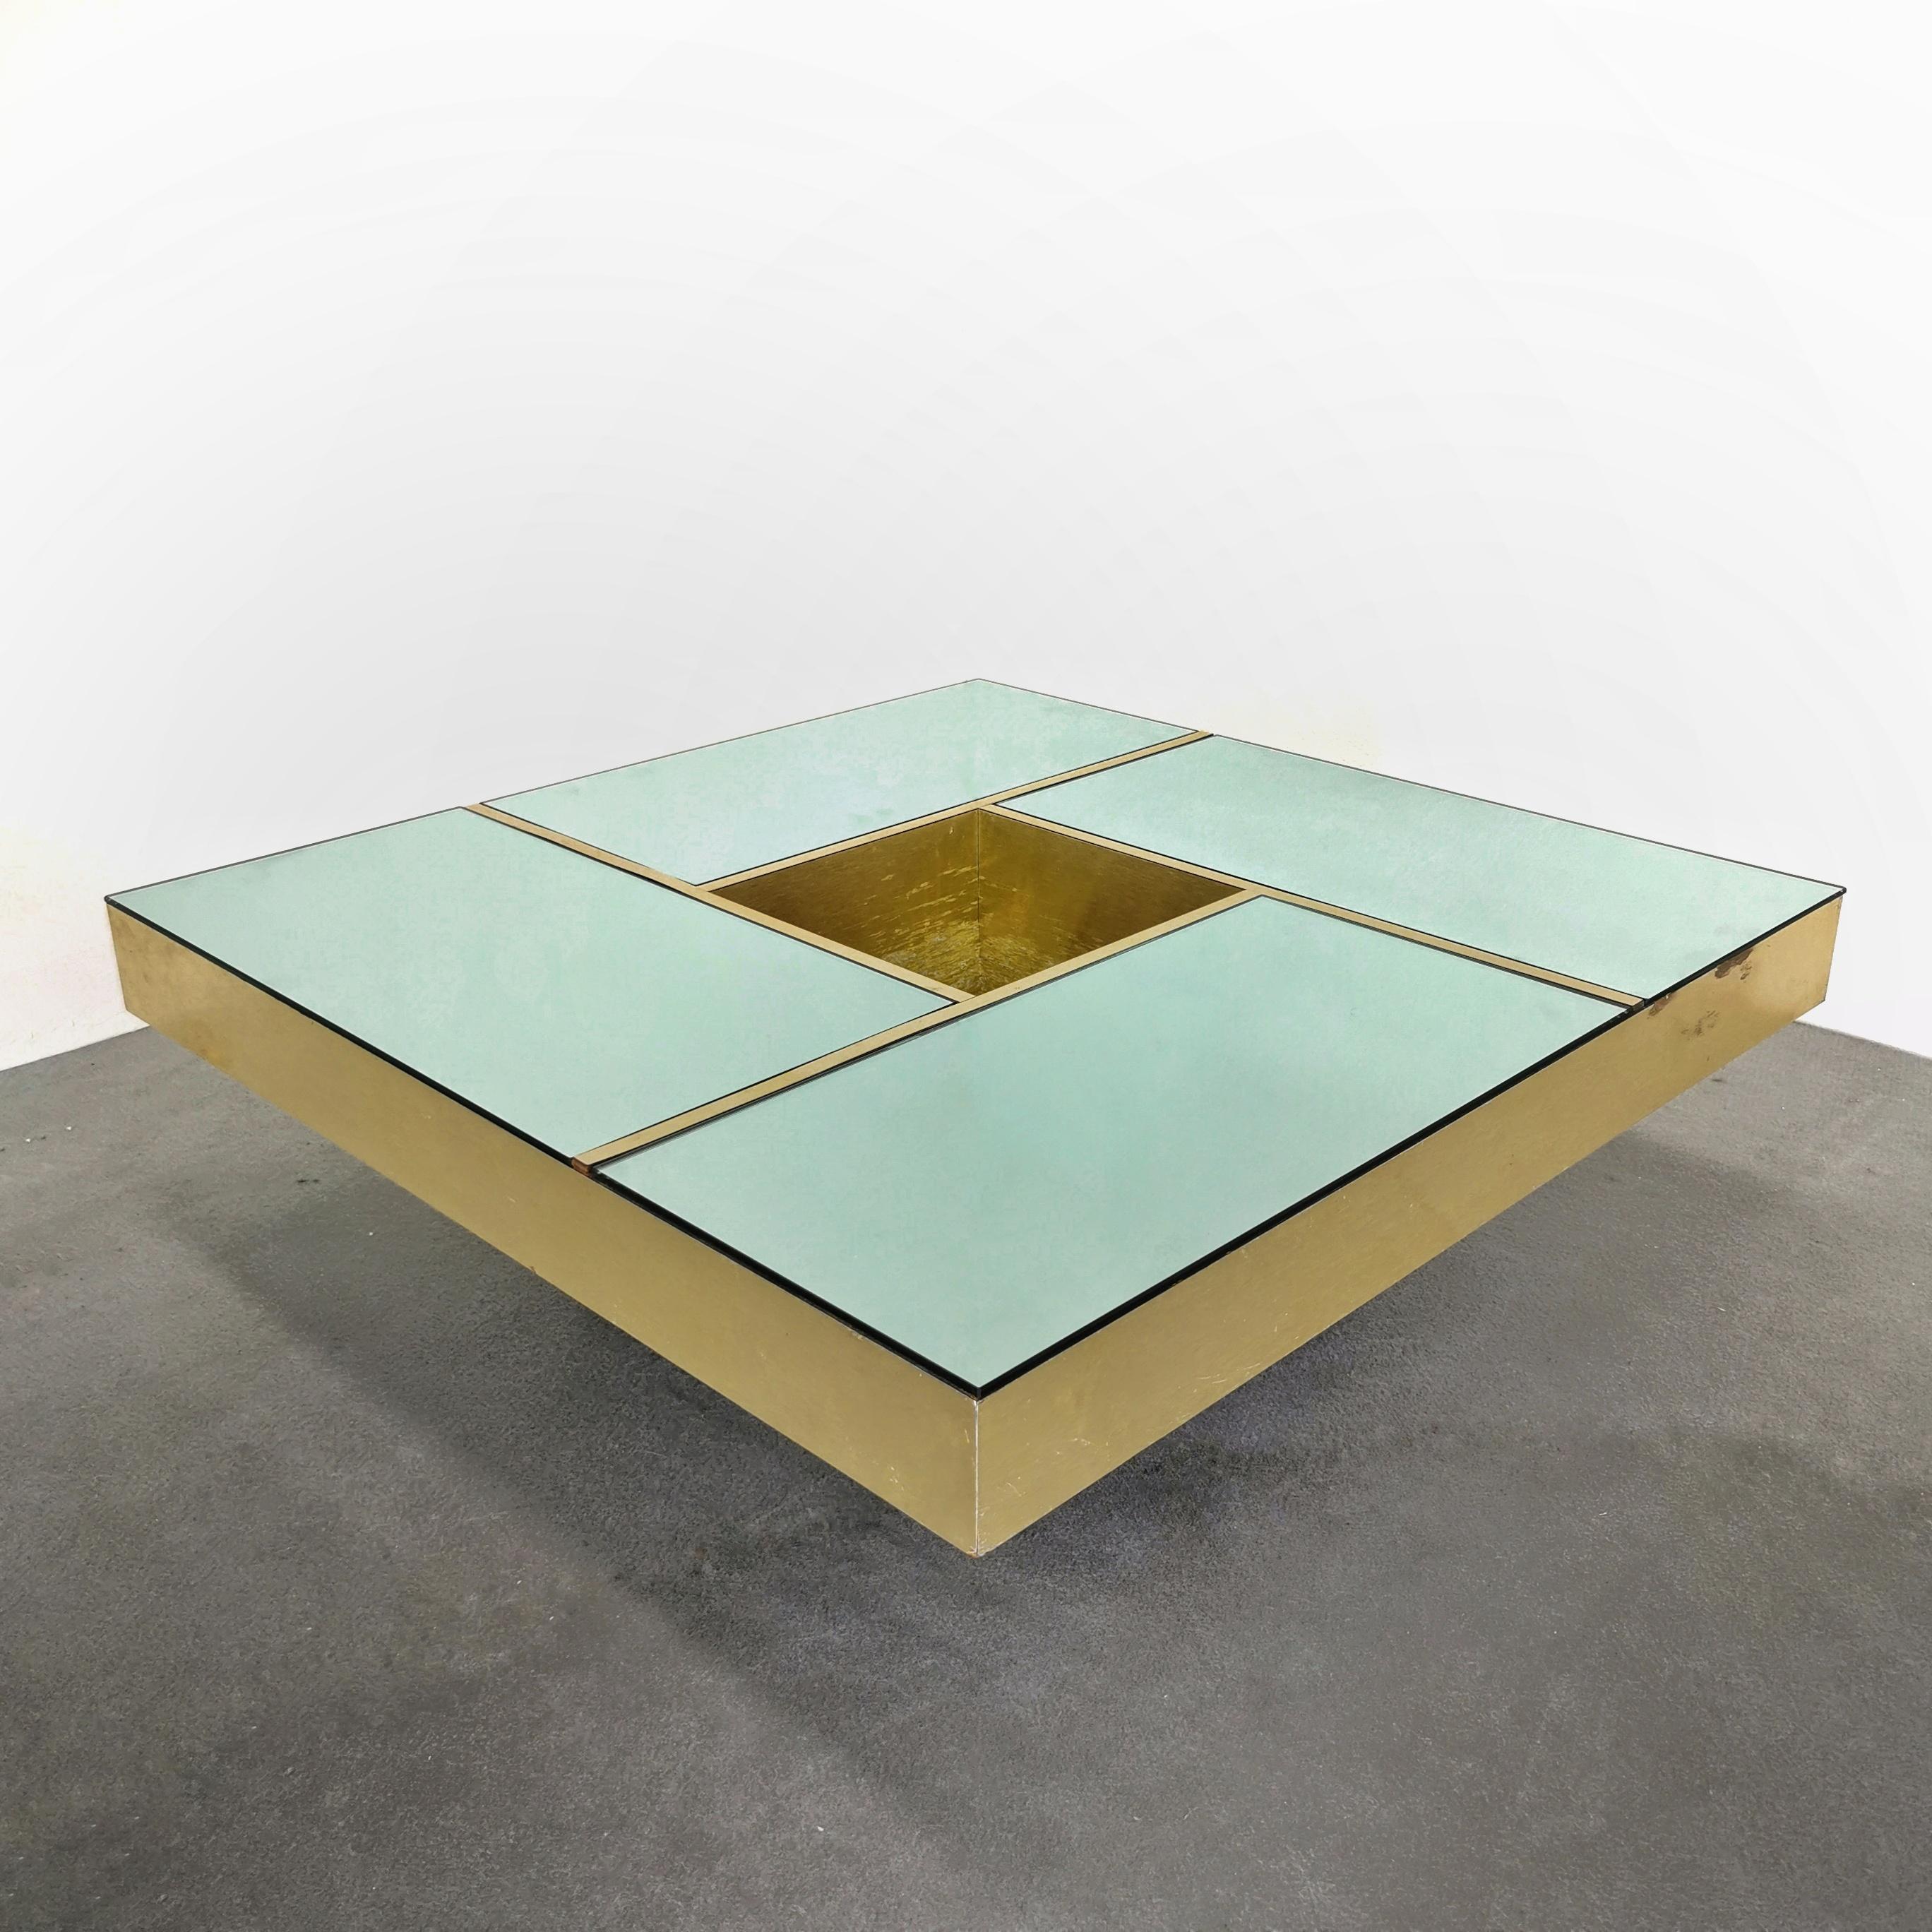 Quadratischer Couchtisch Modell 'Shilling', entworfen in den 1970er Jahren von Giovanni Ausenda, Guido Baldo Grossi & Gianni Gavioli für NY Form. Goldfarbener Tisch mit grüner Spiegelplatte, die durch goldene Bänder in vier Bereiche unterteilt ist.